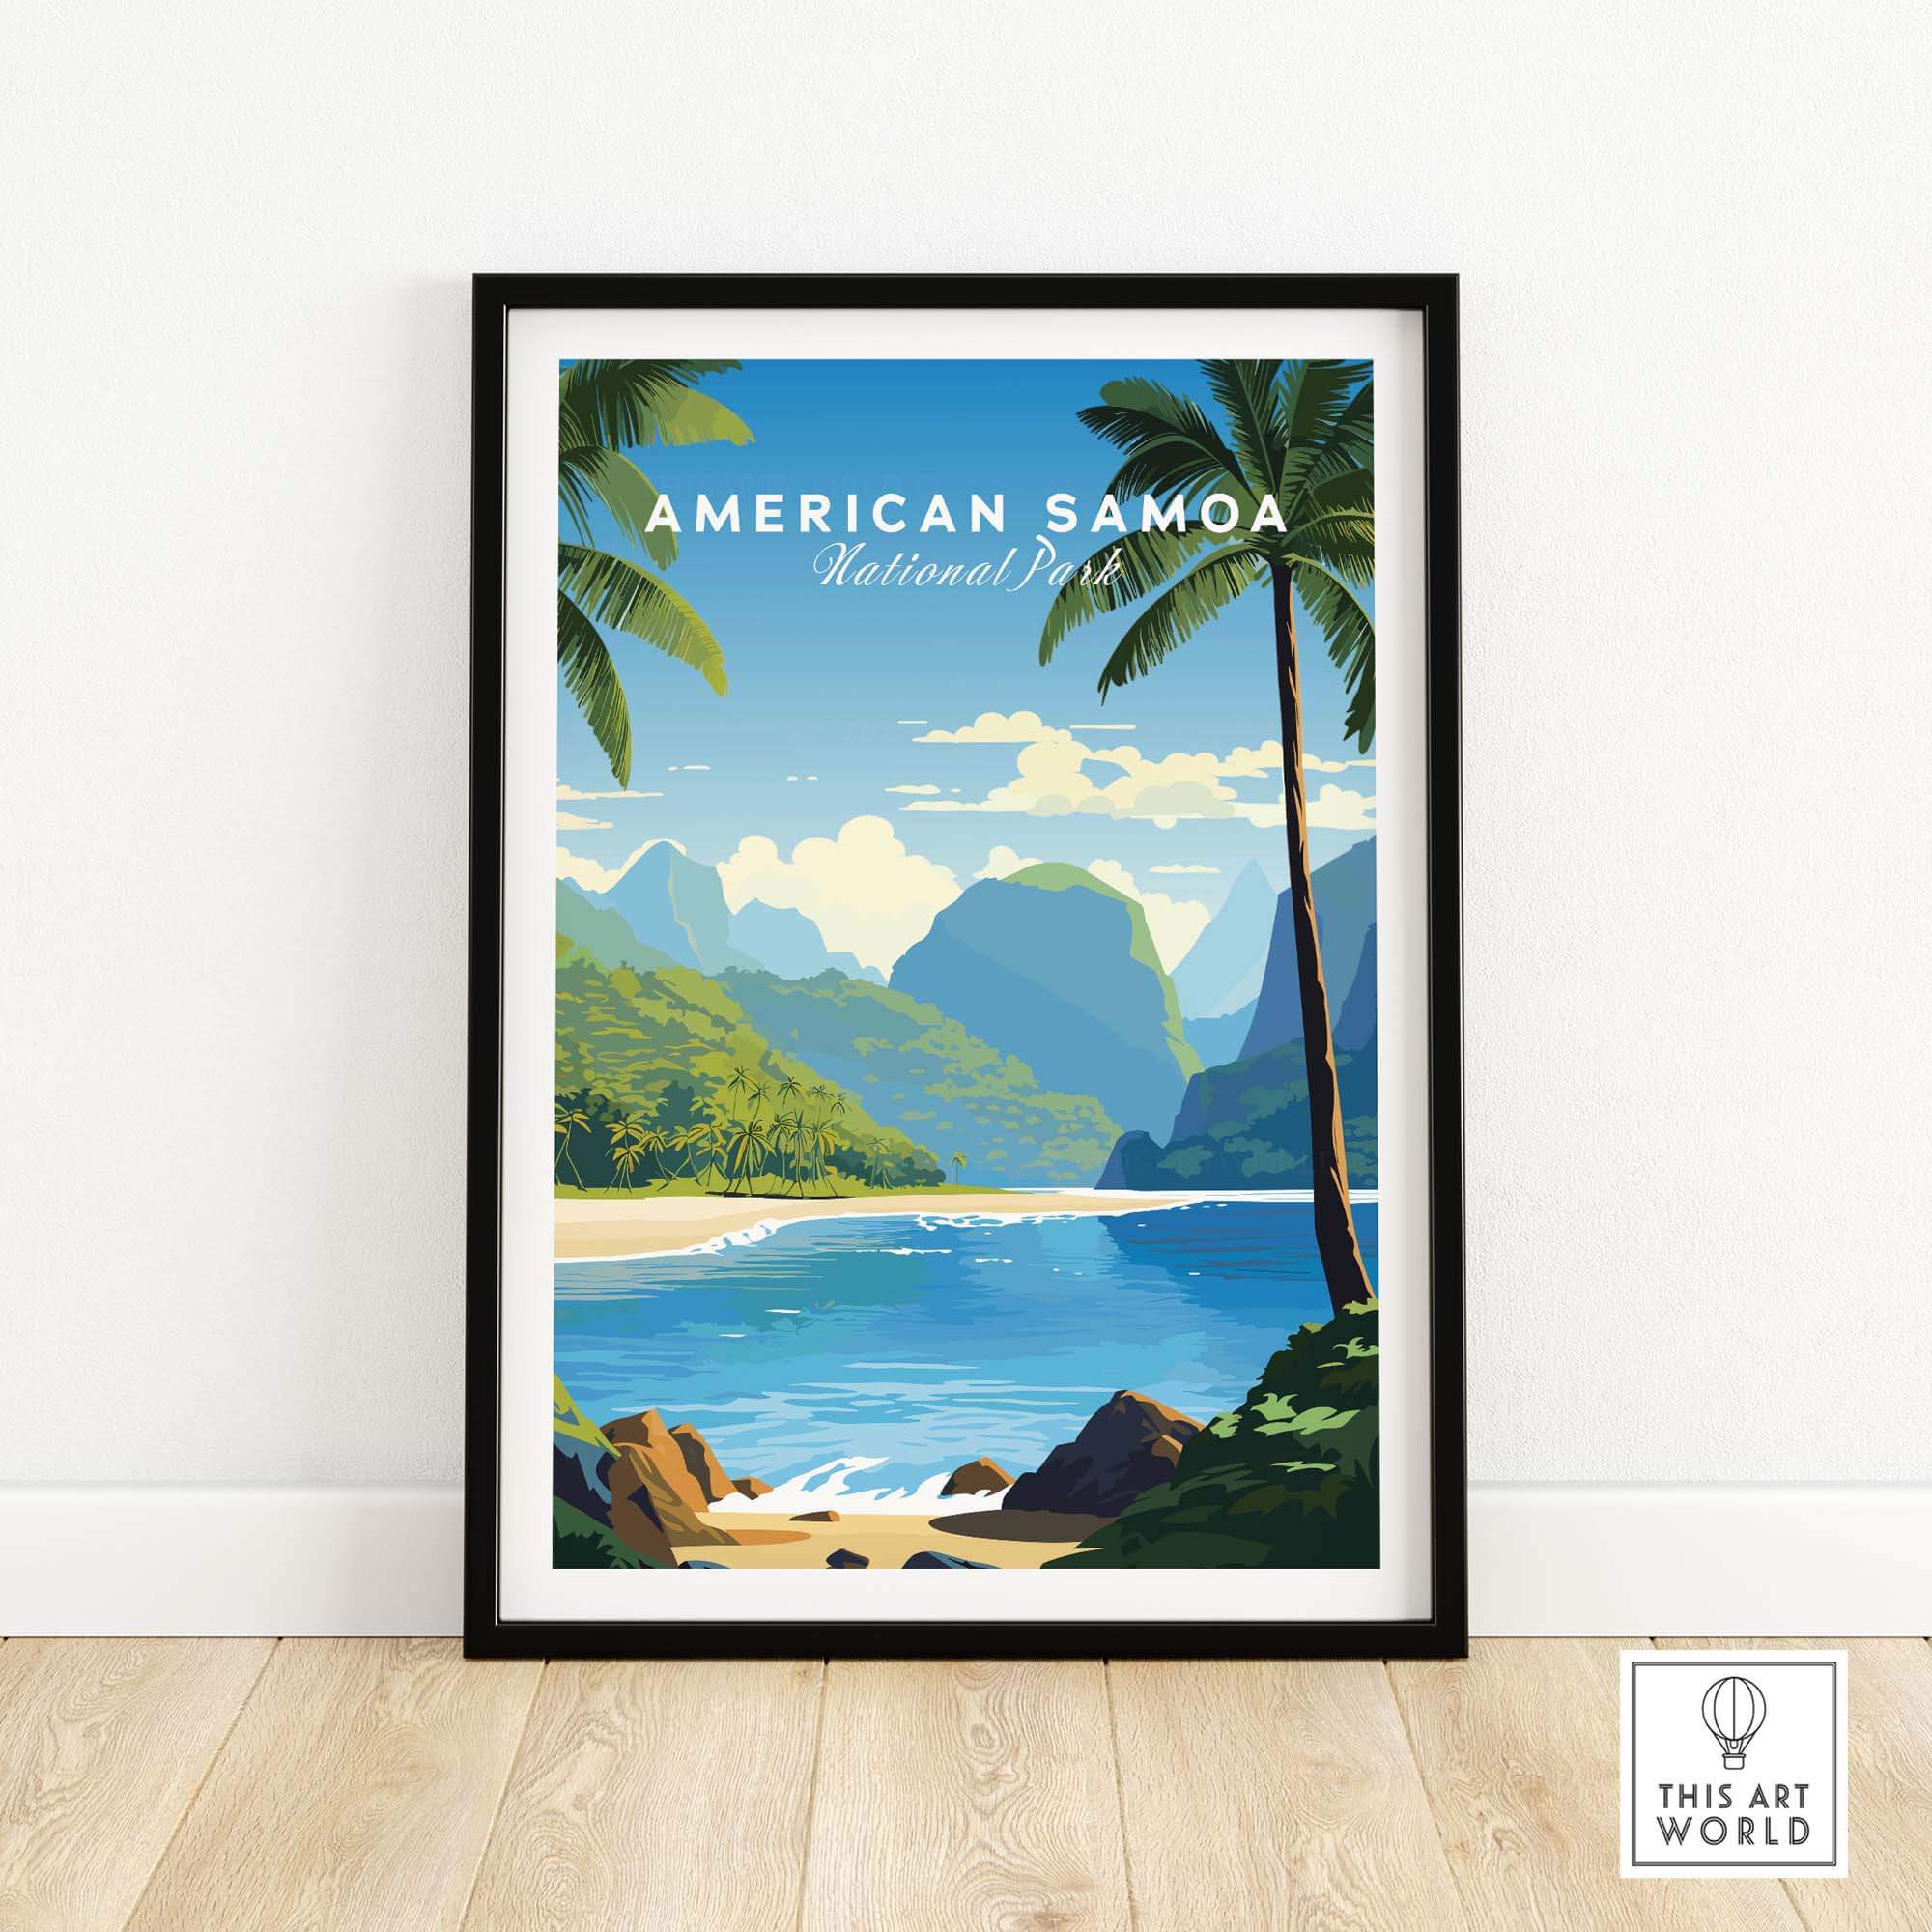 American Samoa National Park Poster